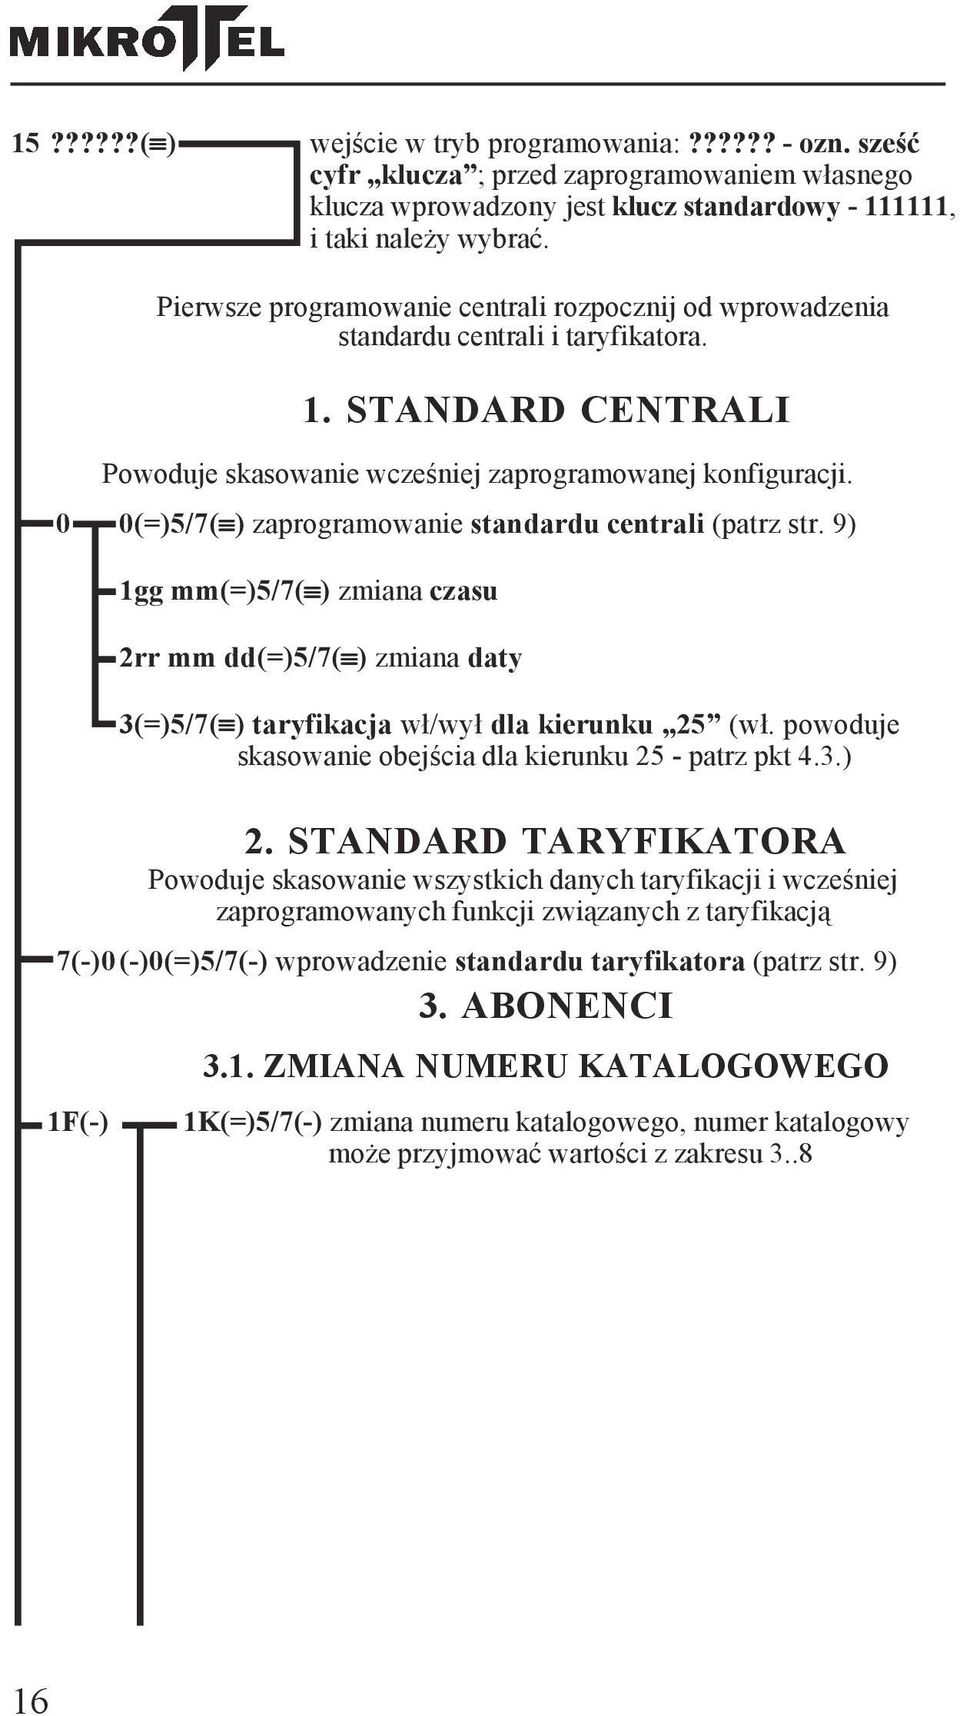 0 0(=)5/7( ) zaprogramowanie standardu centrali (patrz str. 9) 1gg mm(=)5/7( ) zmiana czasu 2rr mm dd(=)5/7( ) zmiana daty 3(=)5/7( ) taryfikacja wł/wył dla kierunku 25 (wł.